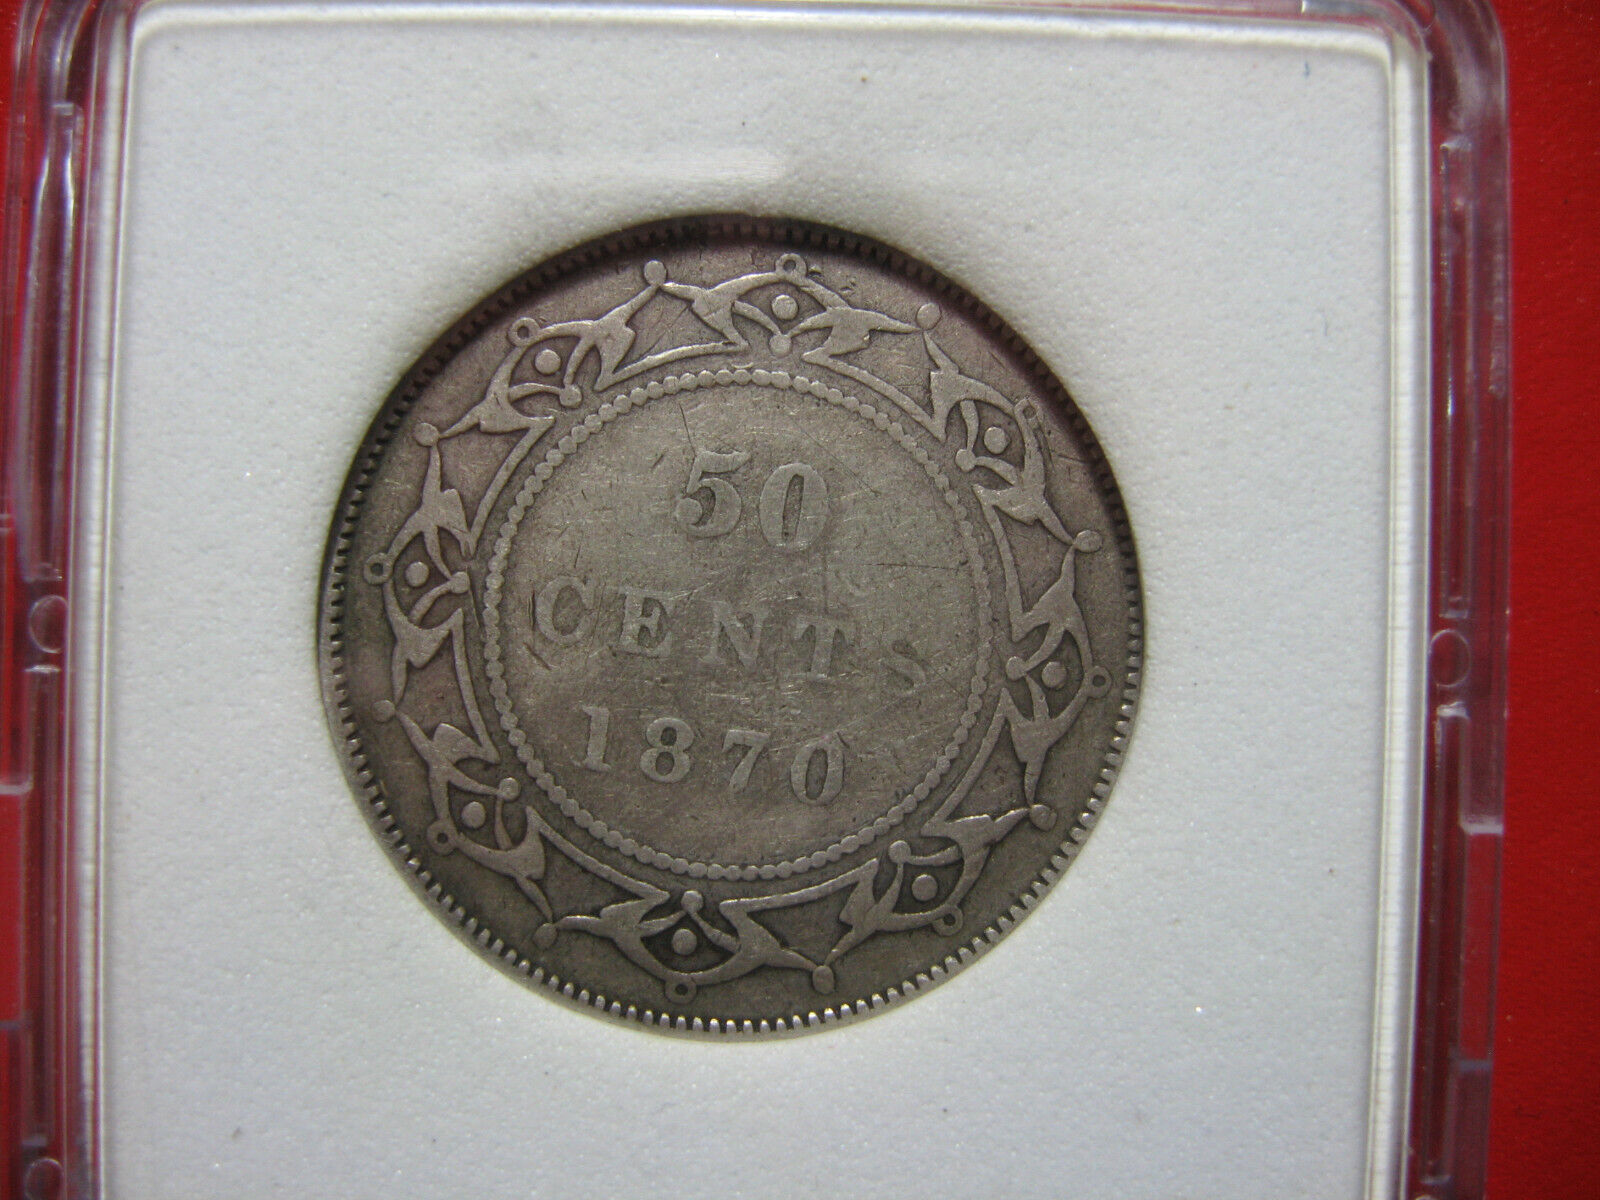 Rare 1870 Newfoundland coin set